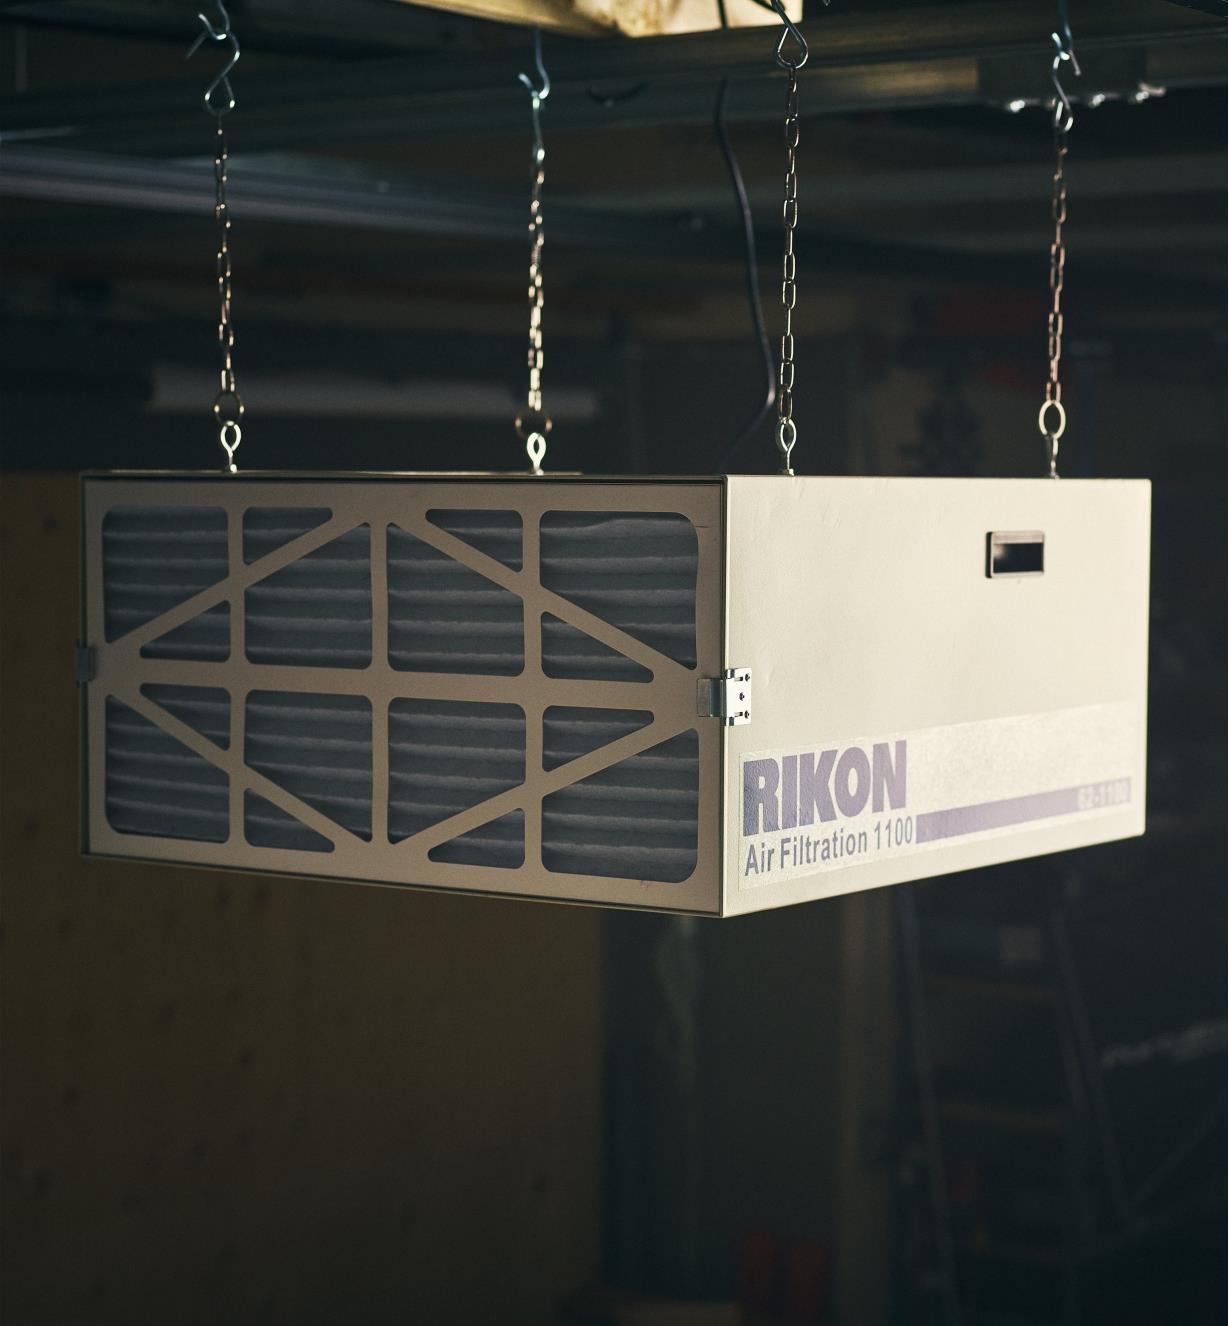 Épurateur d'air 1100 pi3/min Rikon monté au plafond